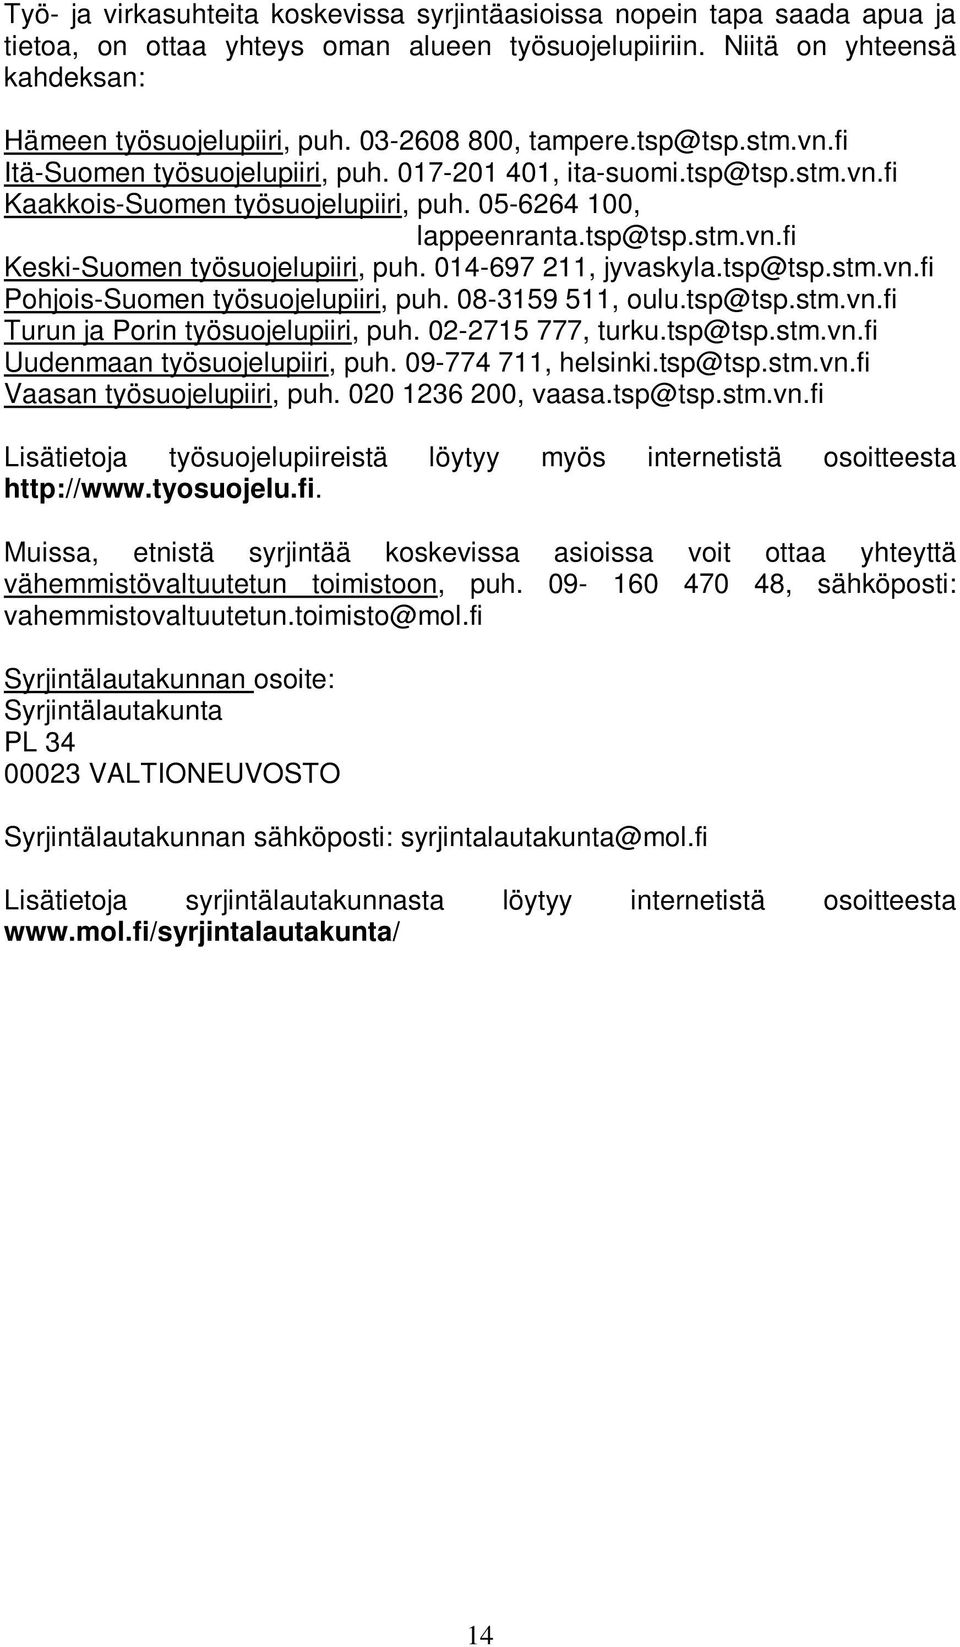 014-697 211, jyvaskyla.tsp@tsp.stm.vn.fi Pohjois-Suomen työsuojelupiiri, puh. 08-3159 511, oulu.tsp@tsp.stm.vn.fi Turun ja Porin työsuojelupiiri, puh. 02-2715 777, turku.tsp@tsp.stm.vn.fi Uudenmaan työsuojelupiiri, puh.